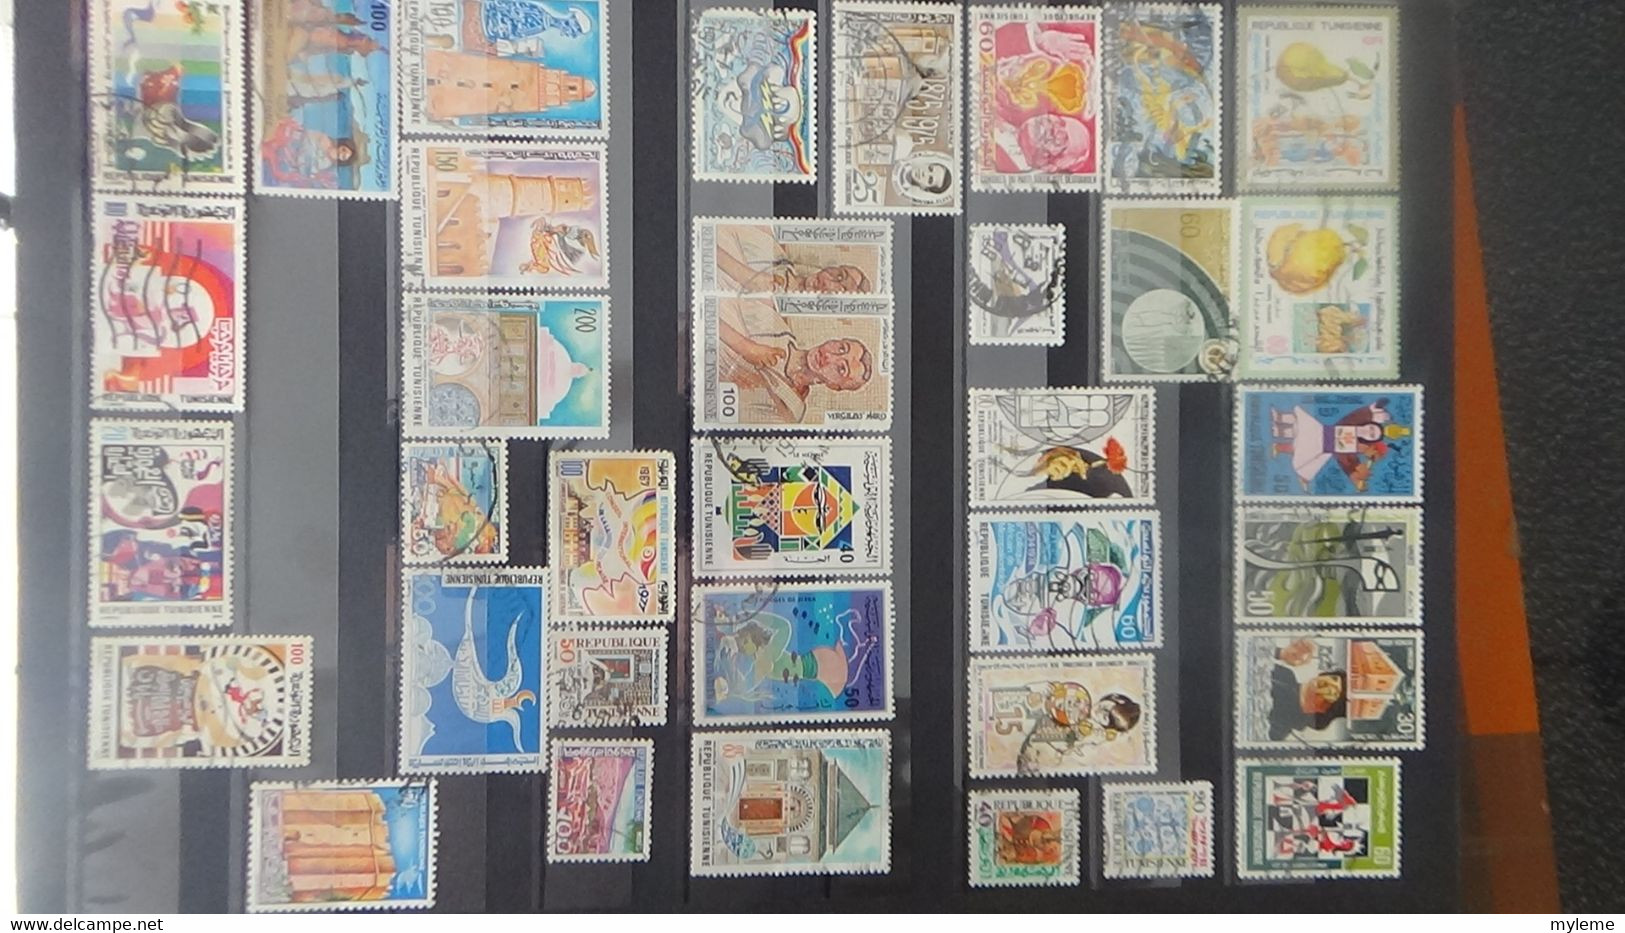 AD50 Bel ensemble de timbres  **, *, NSG et oblitérés de différents pays d'Afrique...  A saisir !!!